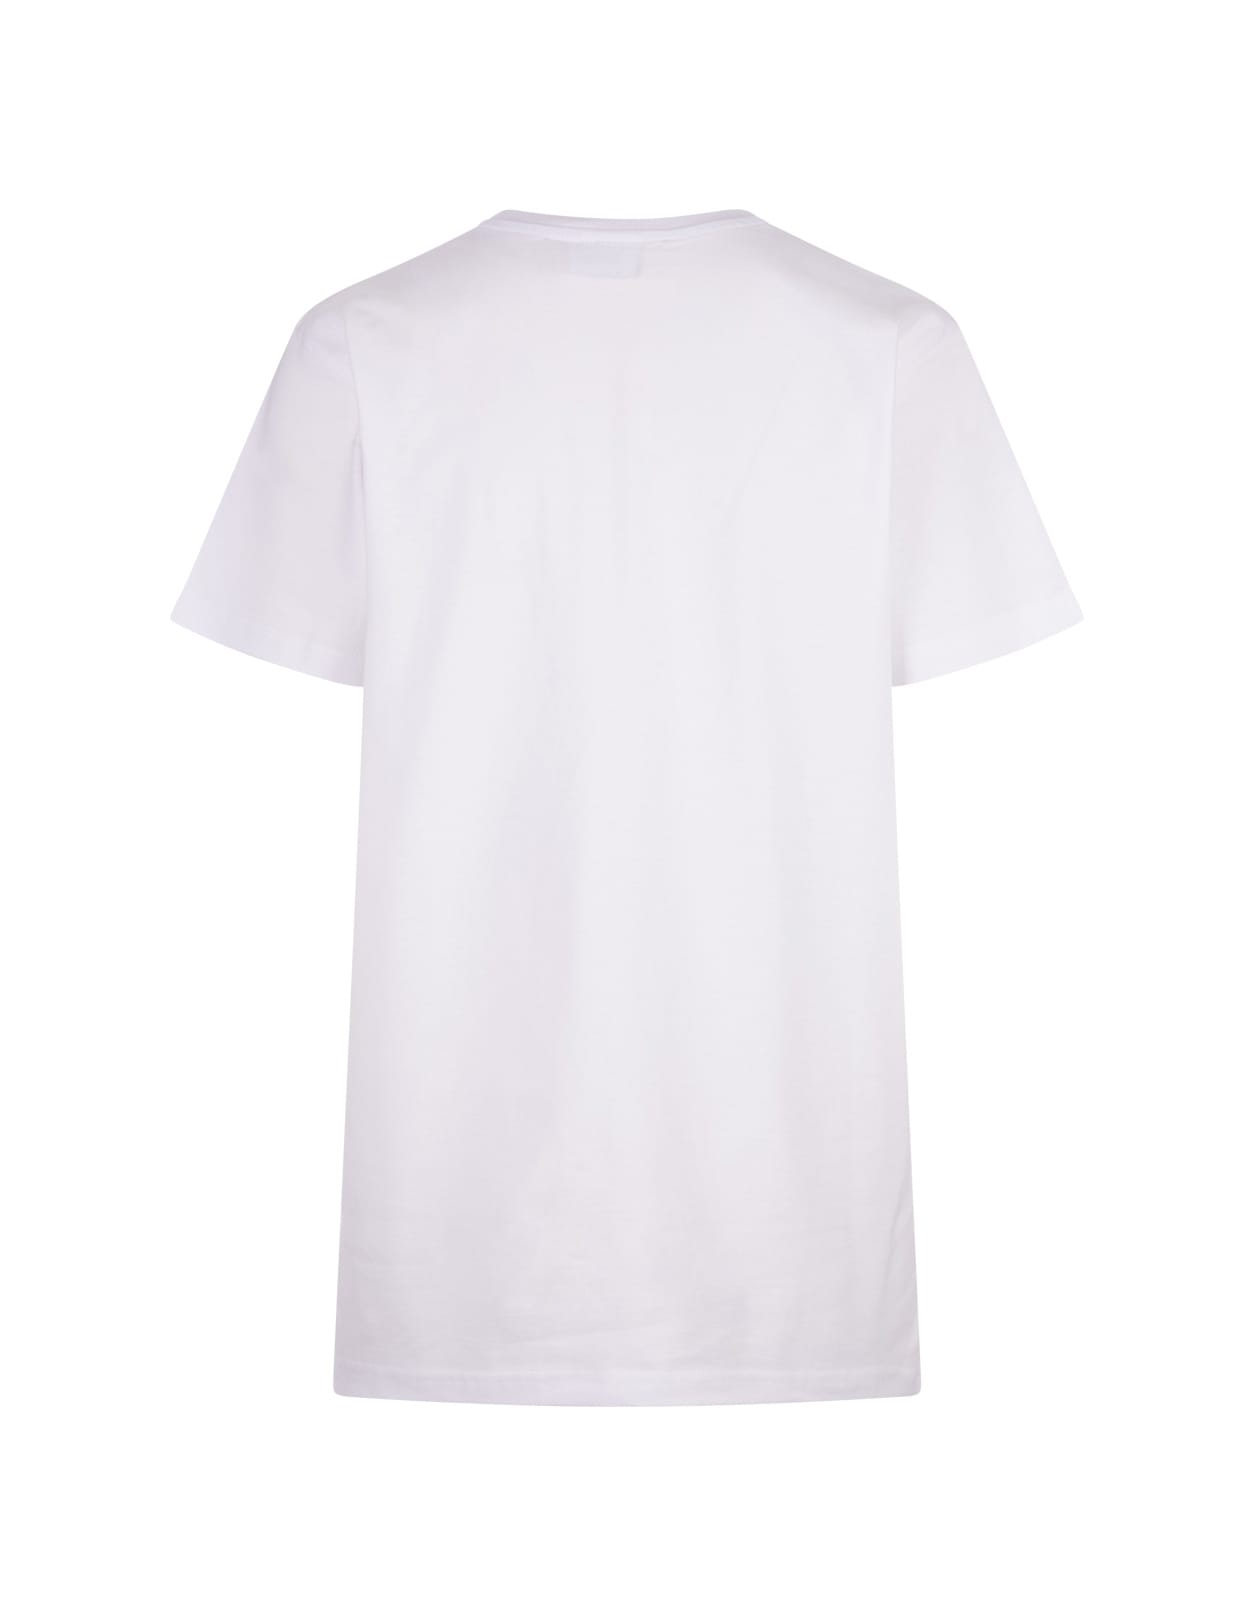 Shop Alessandro Enriquez White T-shirt With Blue Amore Print